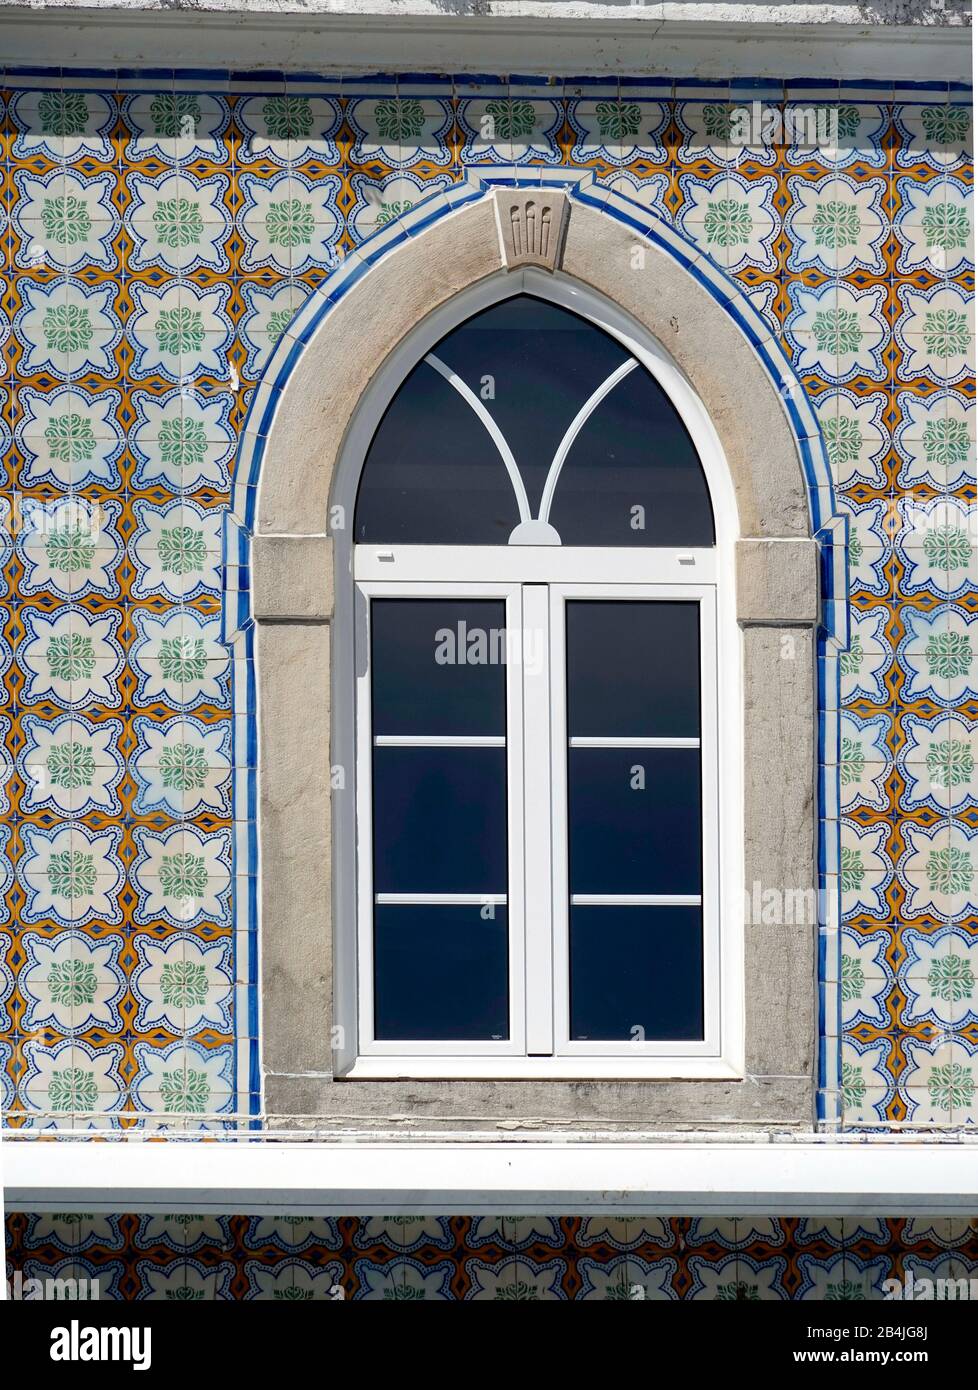 Europe, Portugal, région de Lisbonne, Sintra, maison, façade en carreaux de céramique, azulejos, fenêtre, détail Banque D'Images